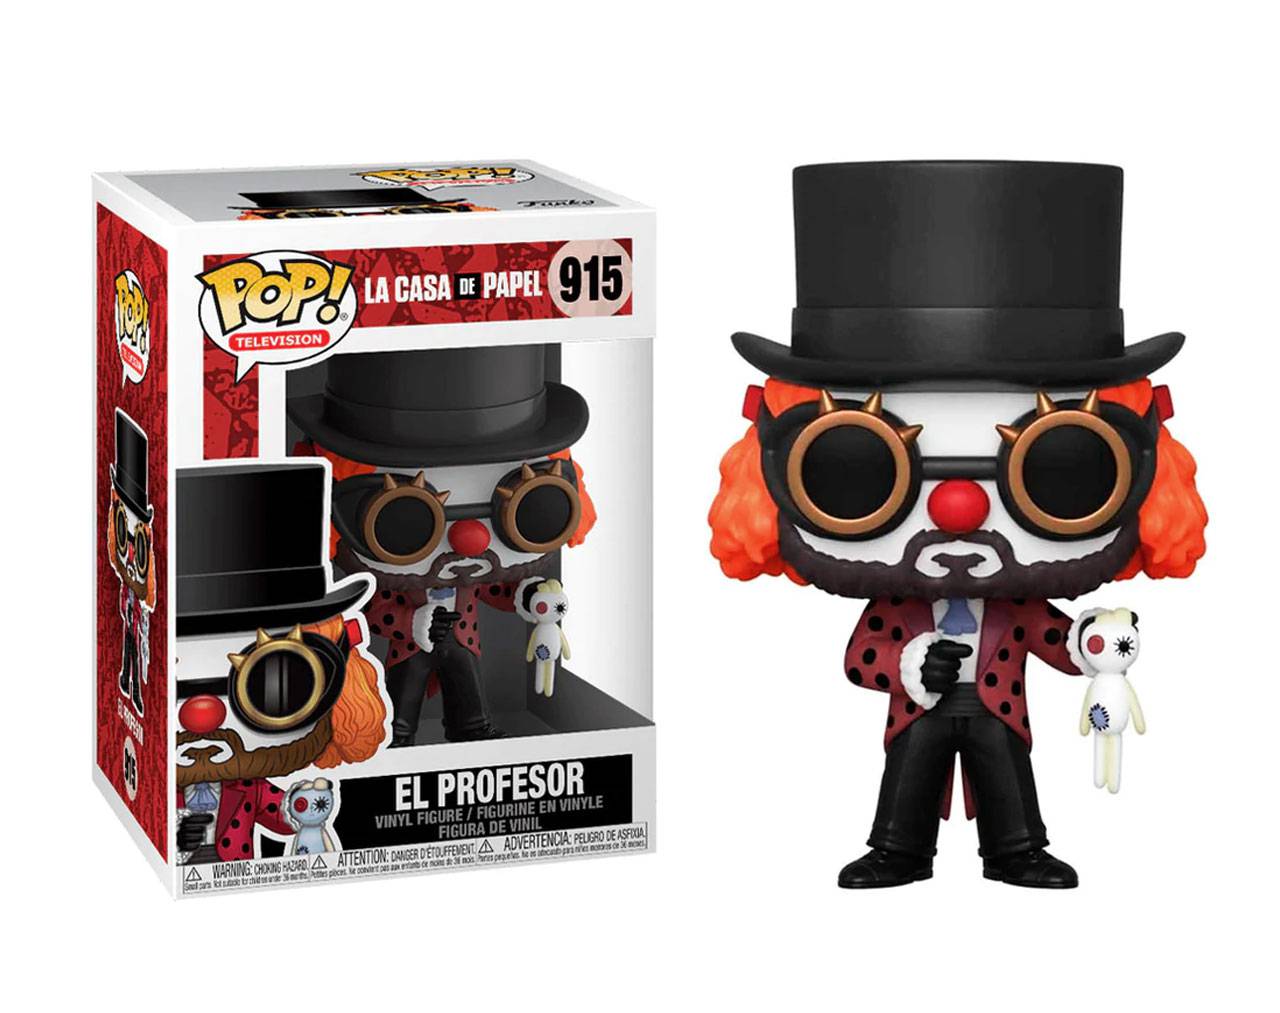 El Profesor (Clown) Pop! Vinyl